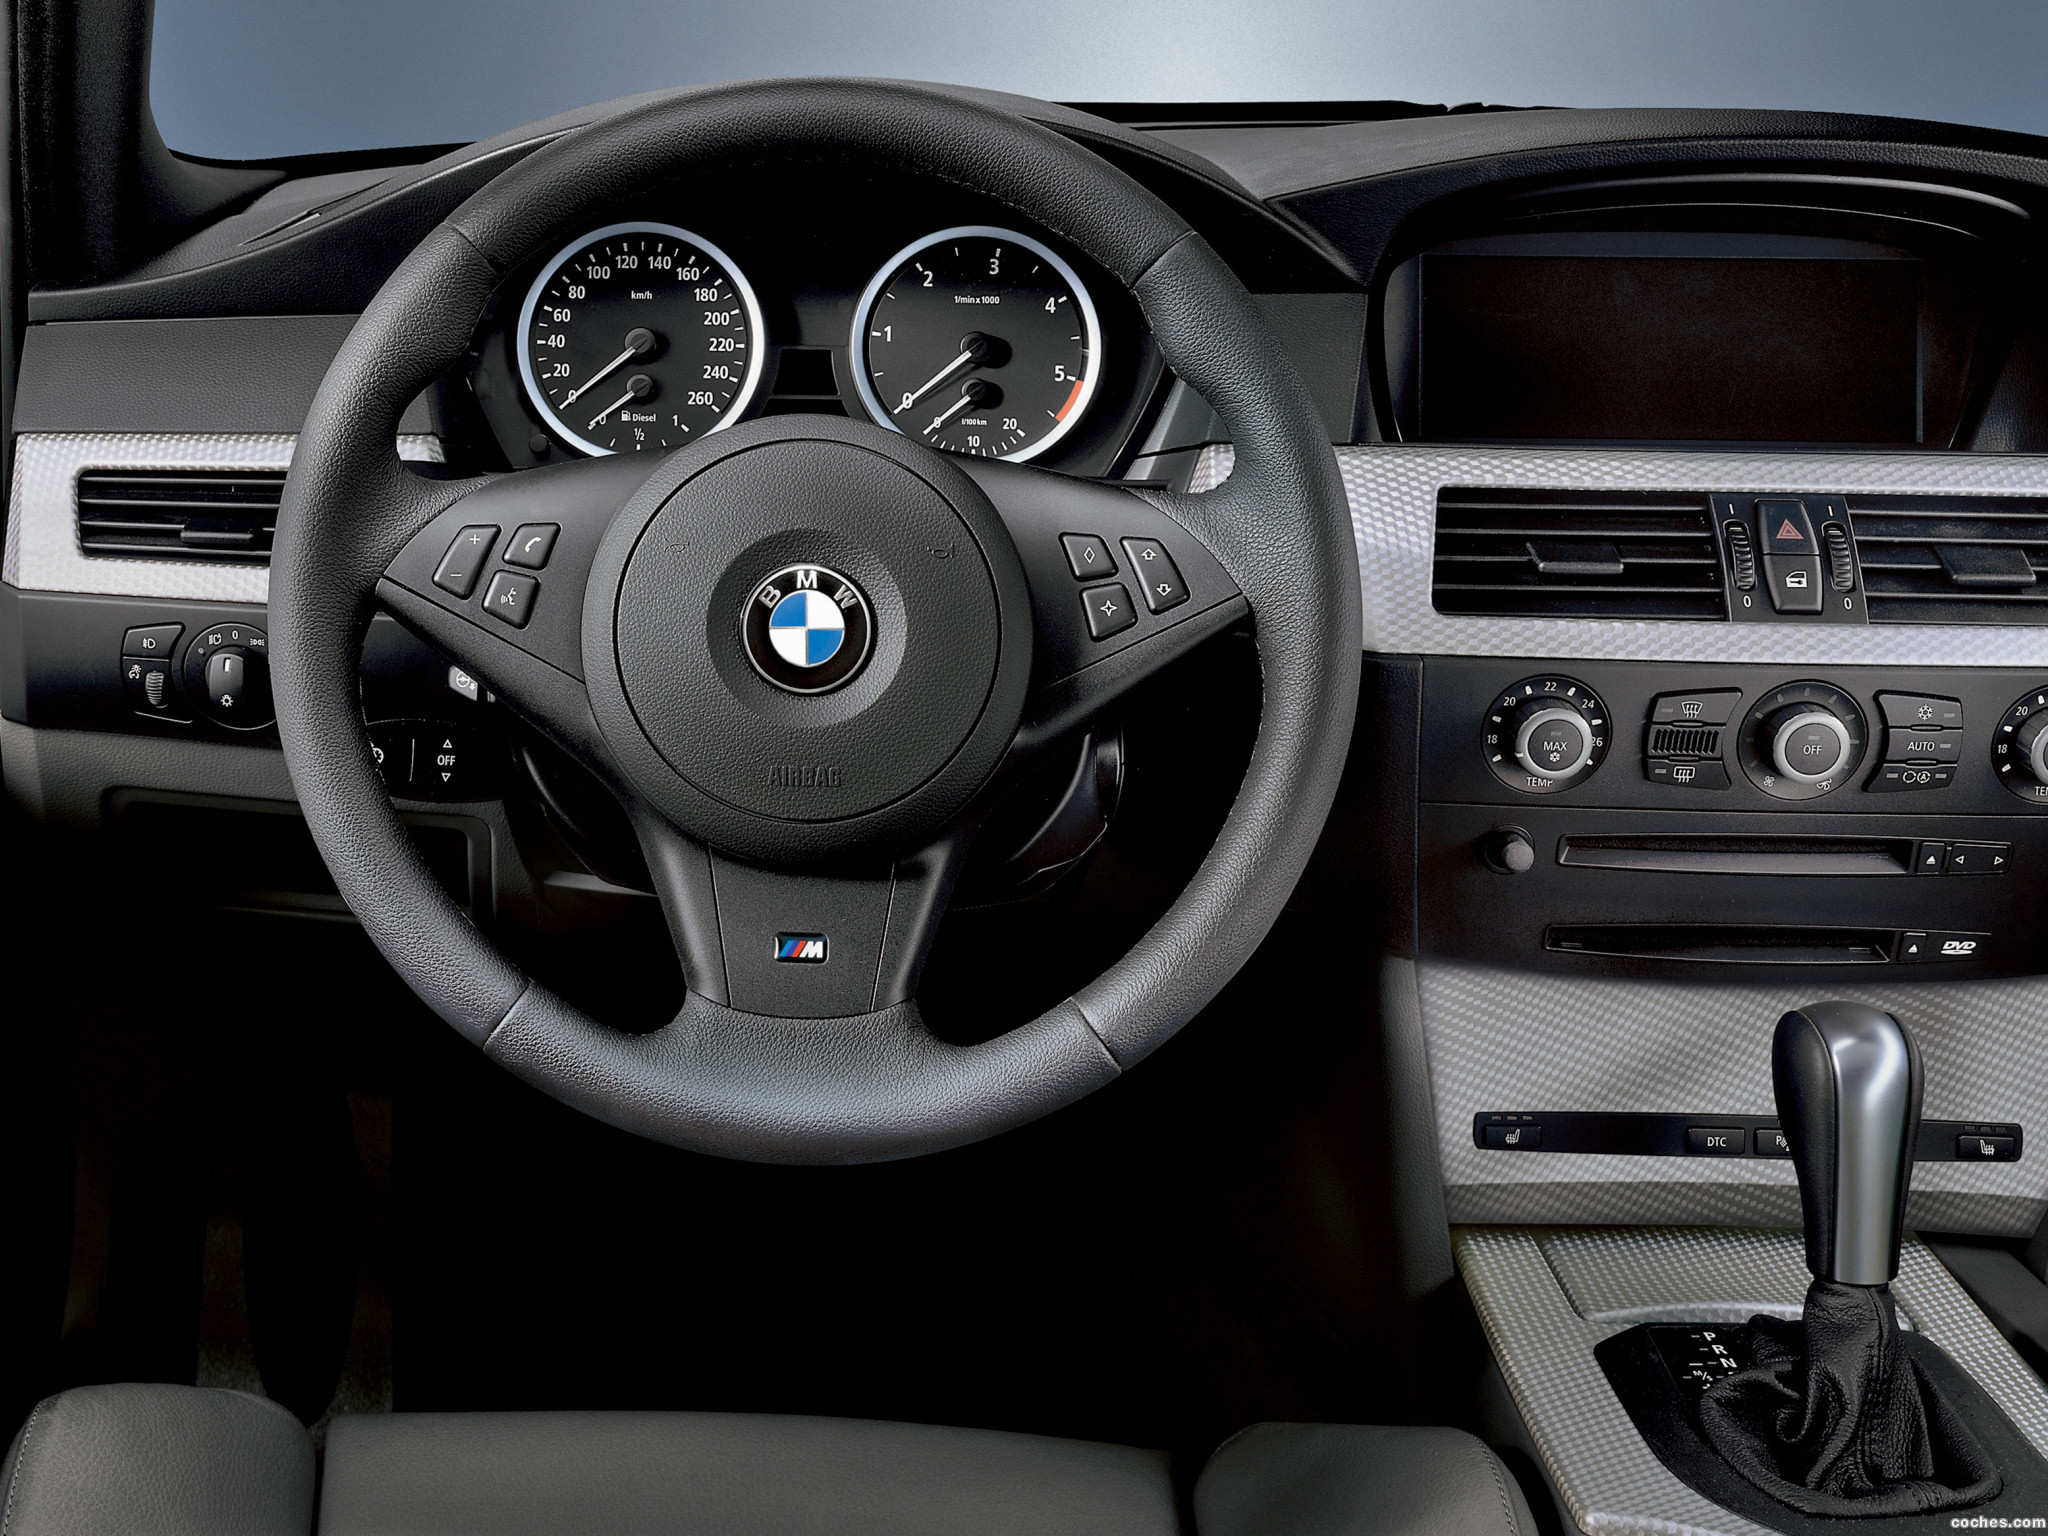 Е60 спорт. BMW e60 Interior. БМВ 530 е60 салон. BMW e60 530i. BMW m5 e60 Interior.